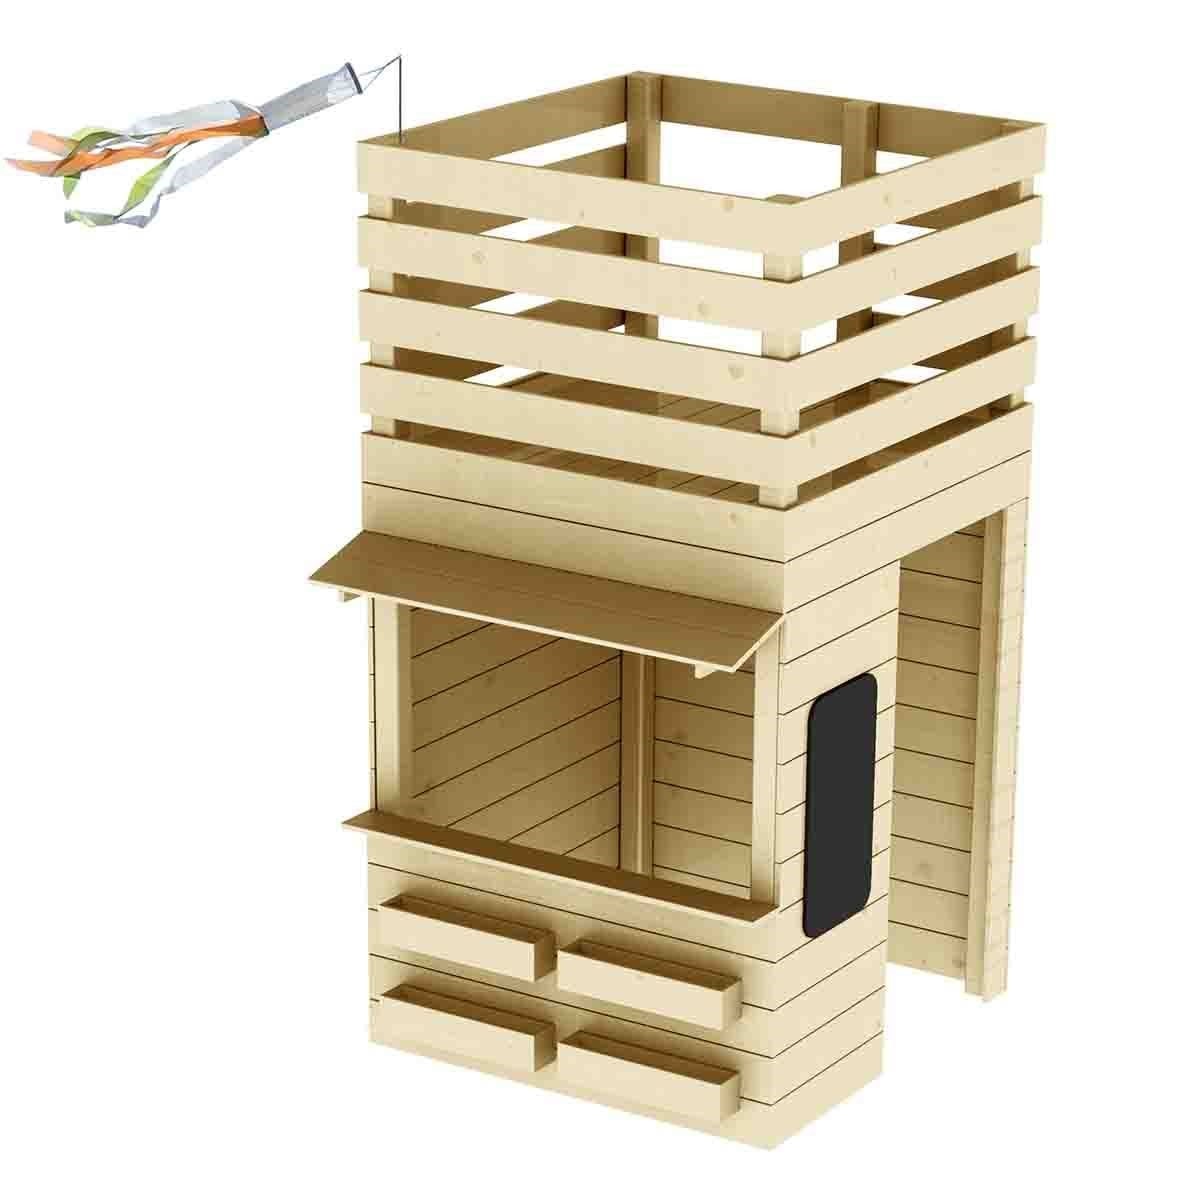 Comment réaliser une cabane pour enfants - L'Atelier par Brico Privé